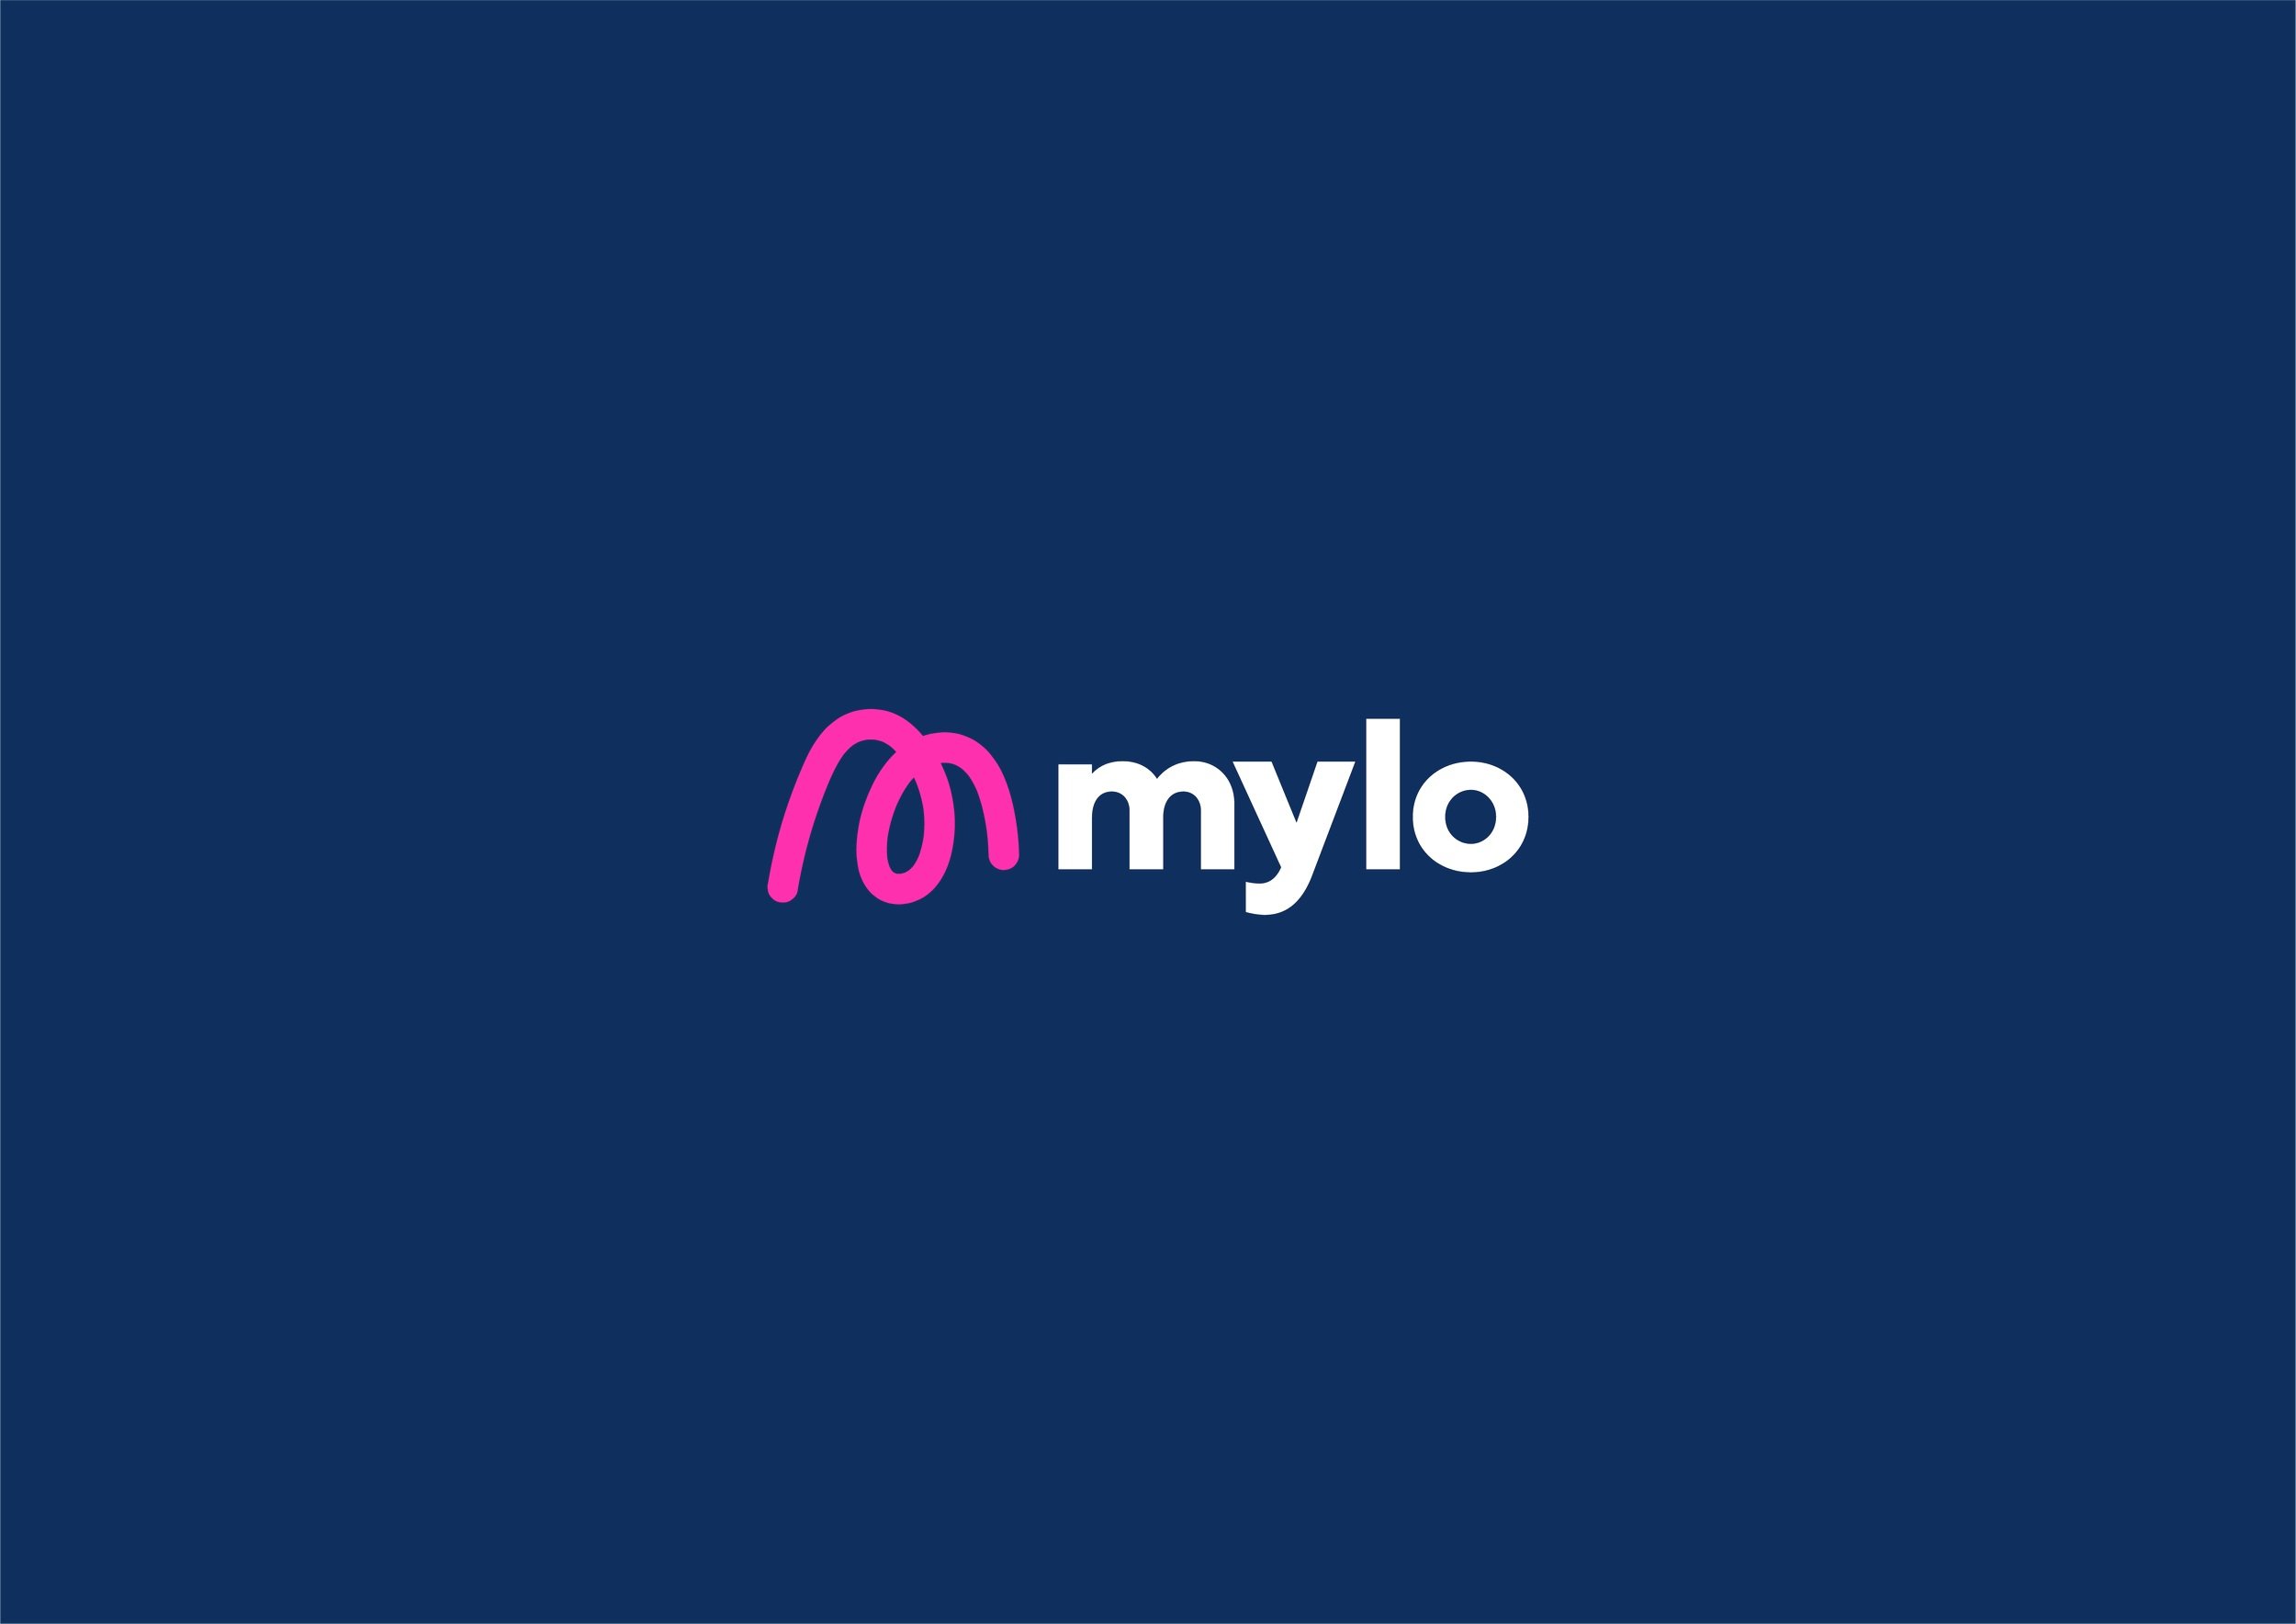 Mylo logo design - logo design in pink/white logo design on a dark blue background